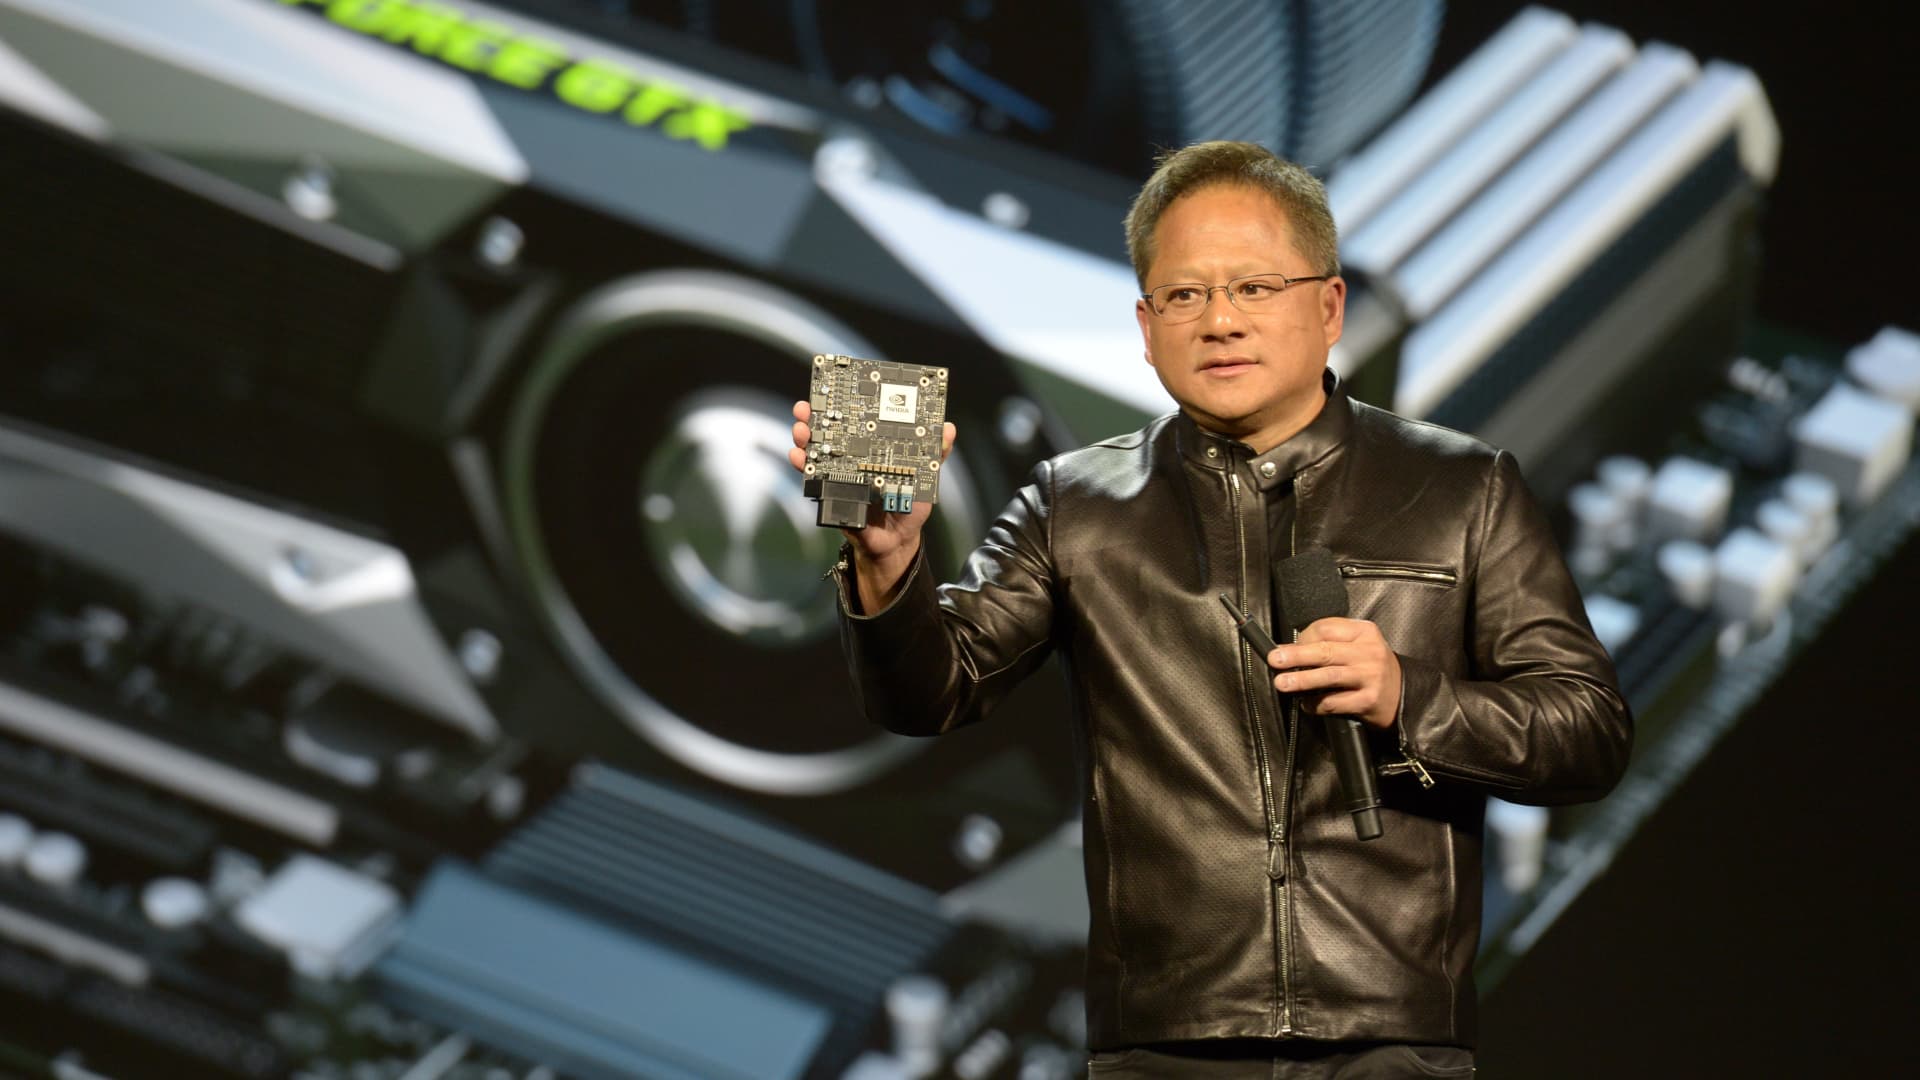 Sprzedaż chipów Nvidii wzrosła ponad dwukrotnie dzięki postępom w dziedzinie sztucznej inteligencji